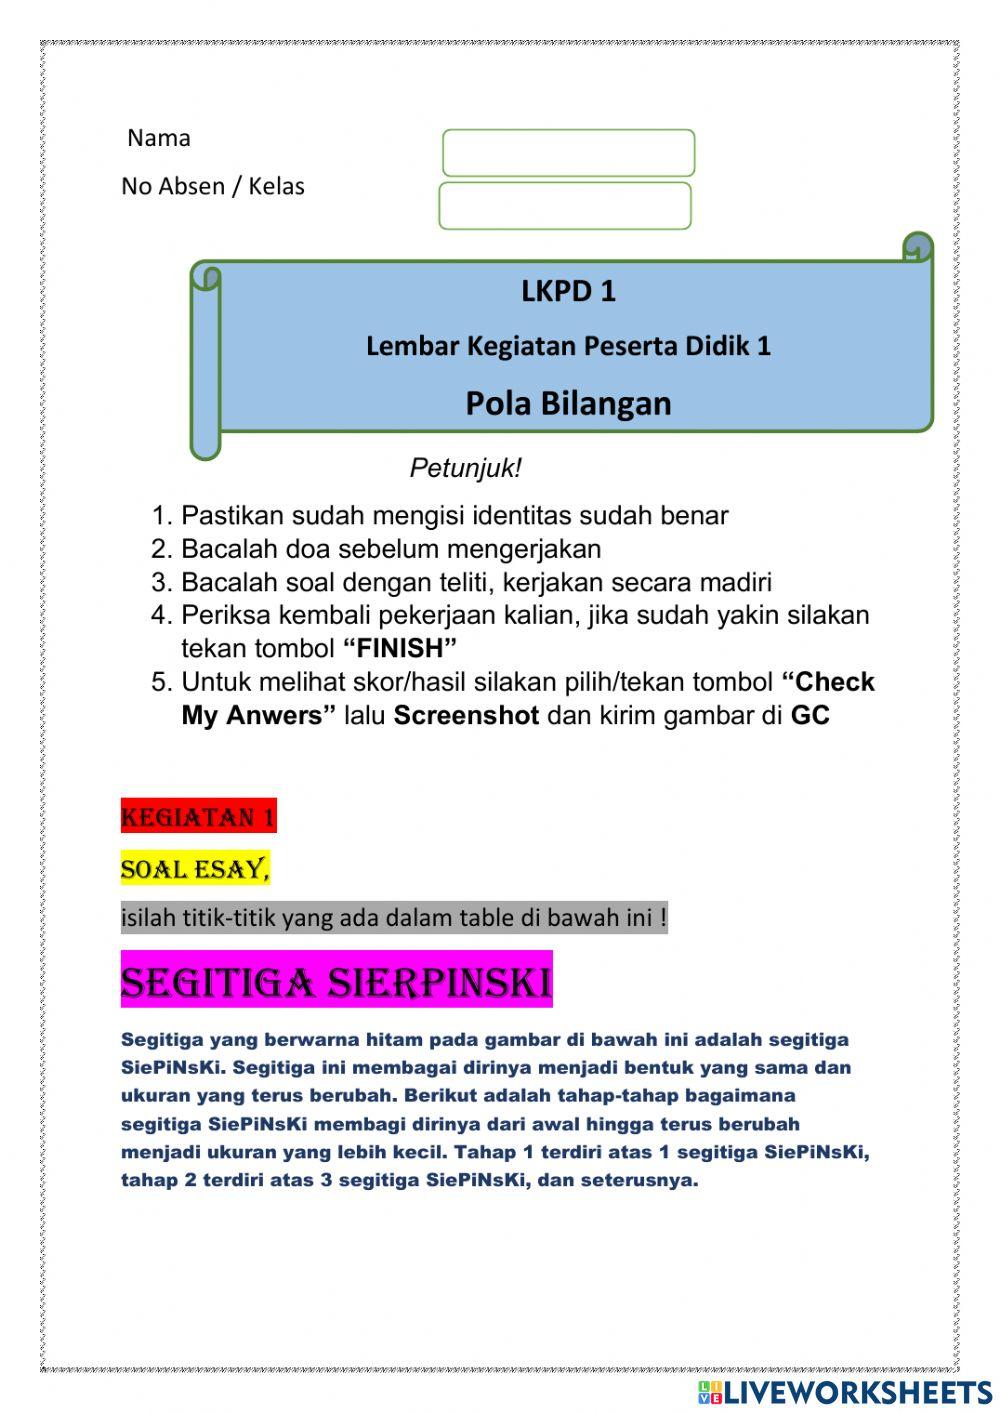 LKPD Pola Bilangan (LW1) kelas 8